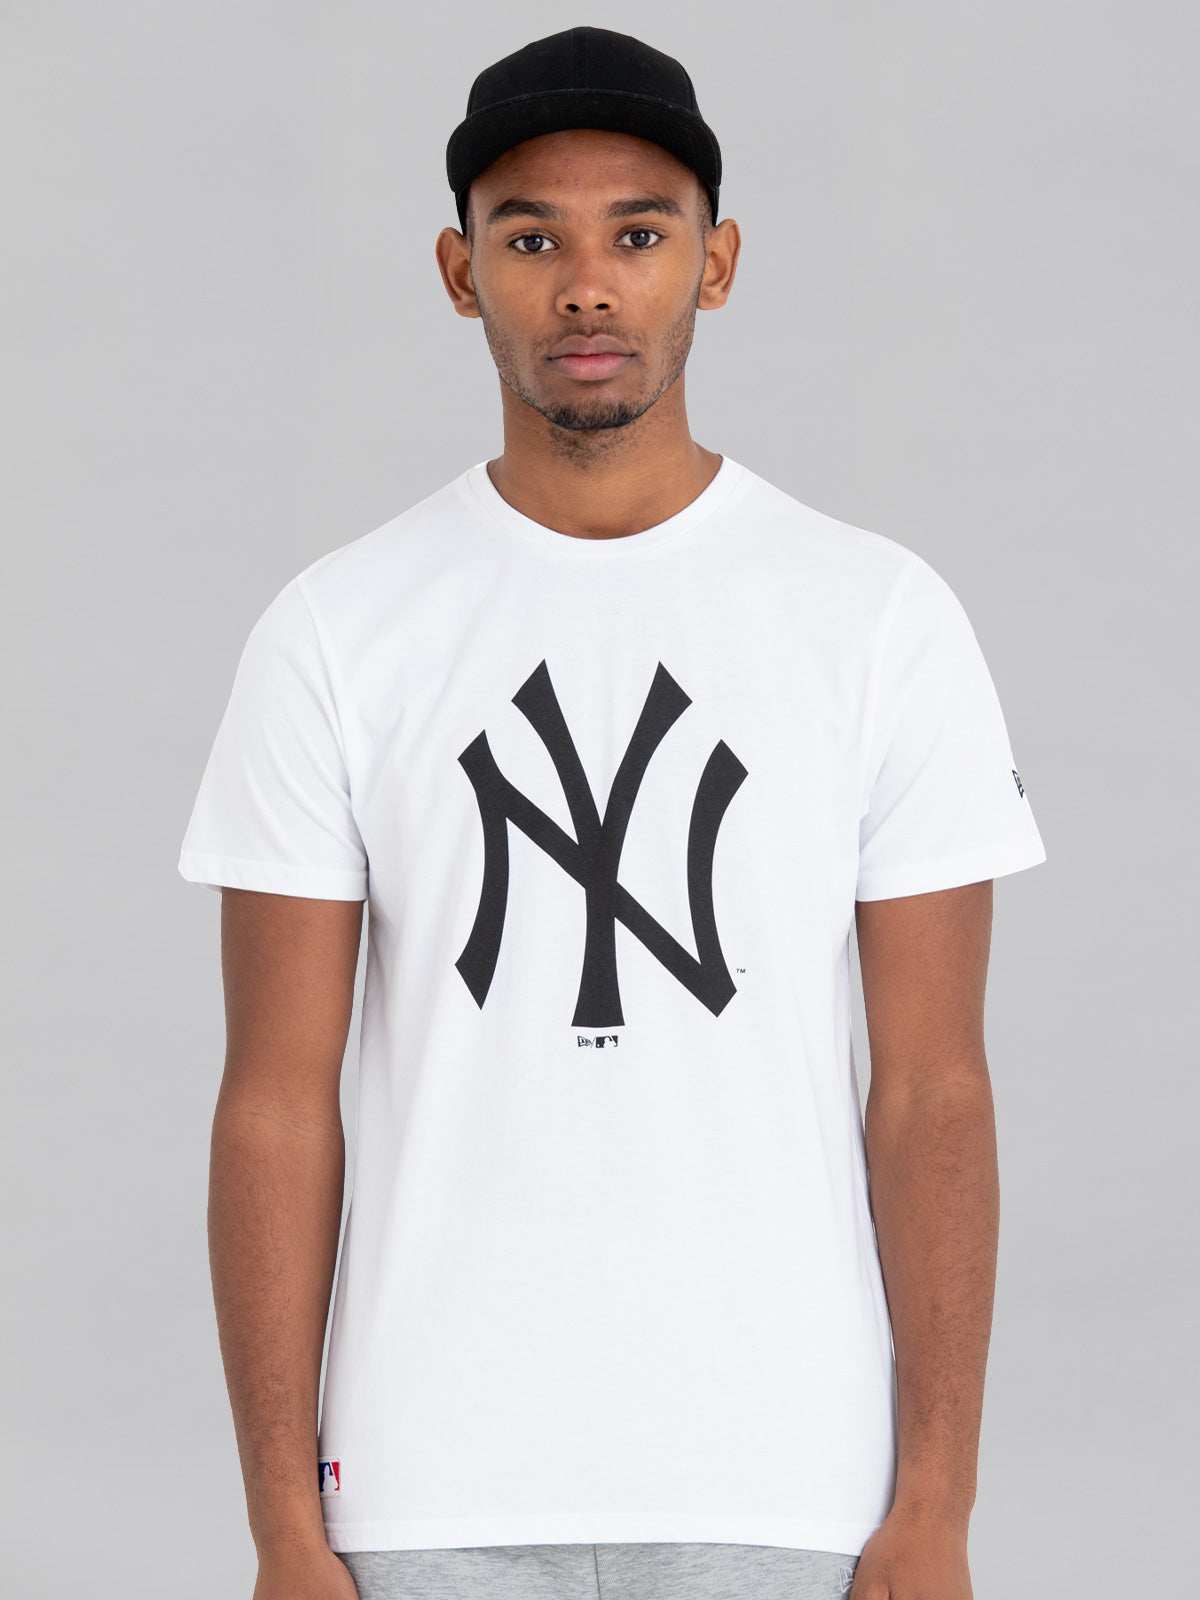 Women's New Era White New York Yankees Henley T-Shirt